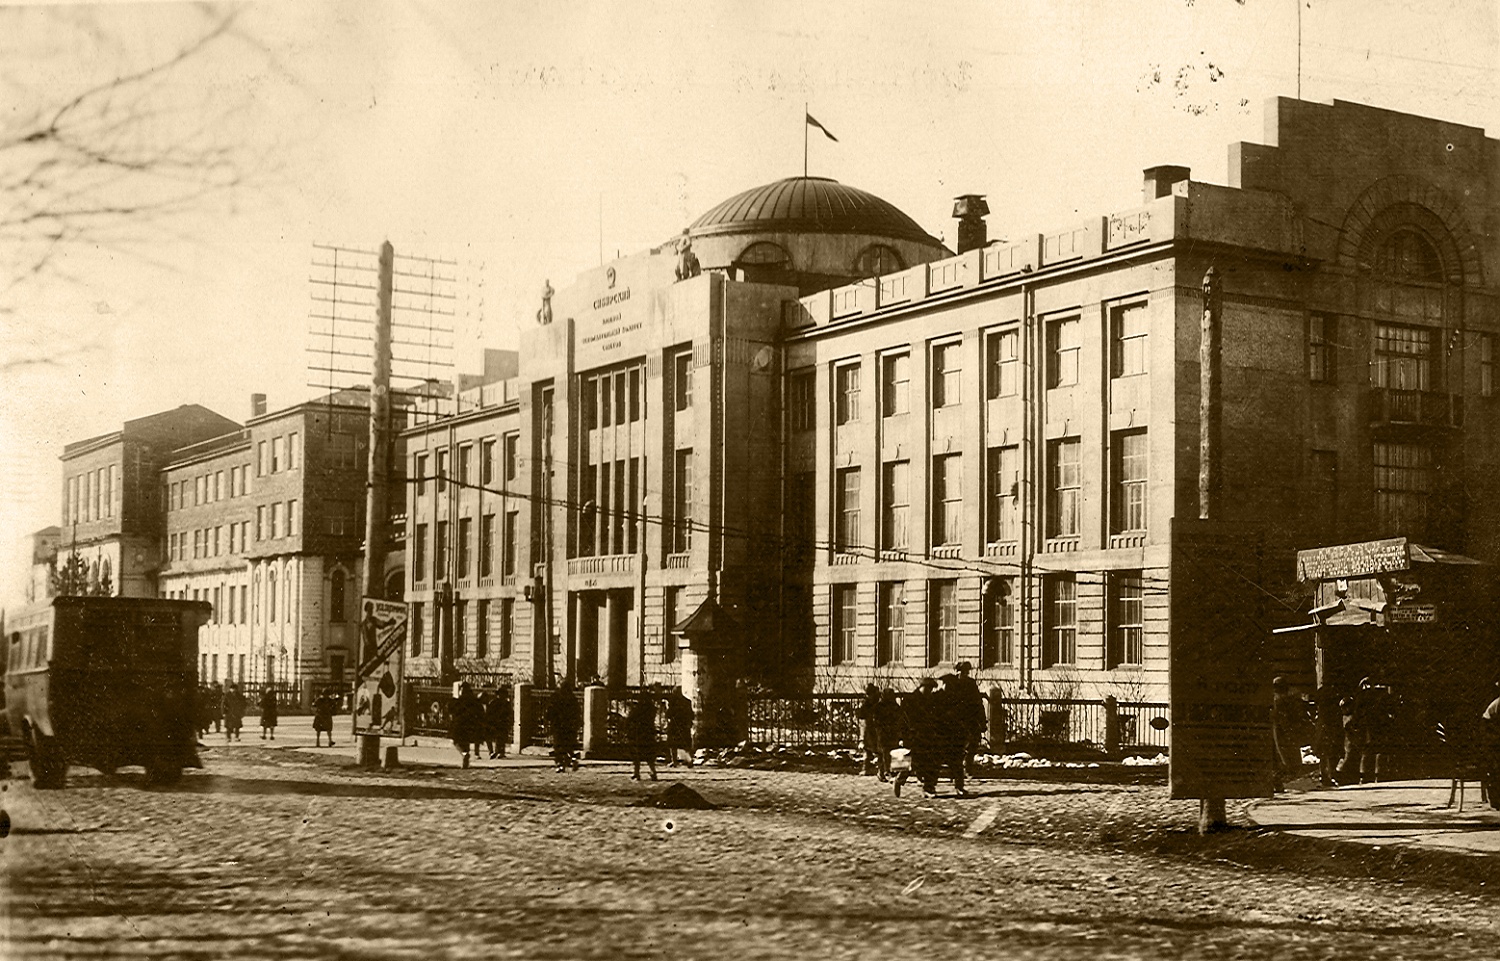 Дом областных организаций (Сибревком) фото конца 20-х годов ХХ века.